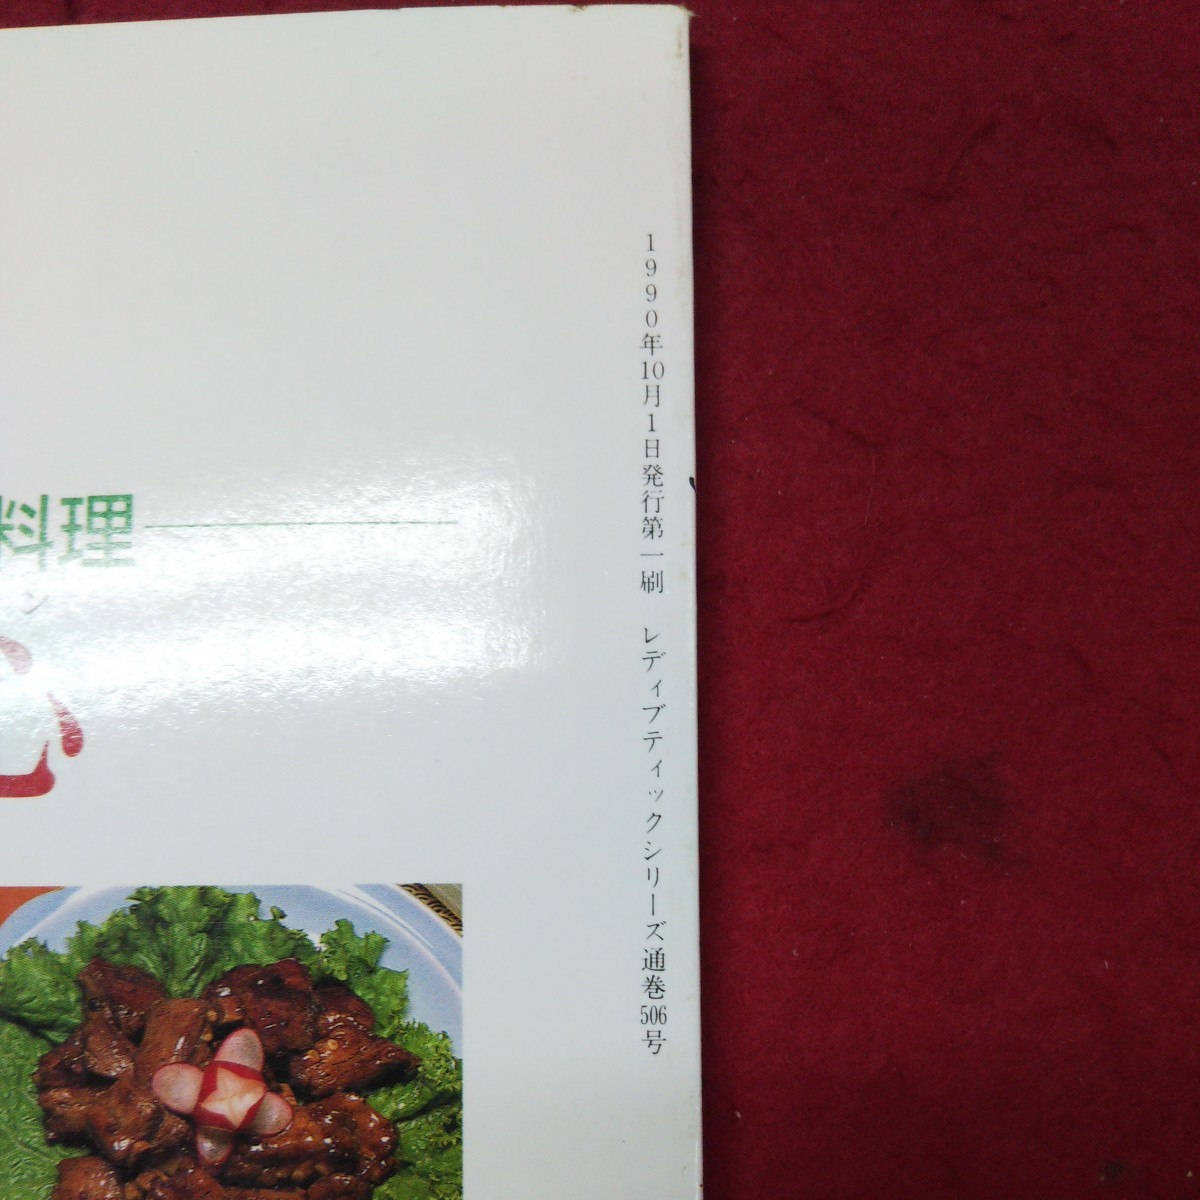 b-002 *9 простой China один товар кулинария . чай пункт сердце retibtik серии No.506 1990 год 10 месяц 1 день no. 1. выпуск журнал кулинария рецепт китайская кухня гёдза 